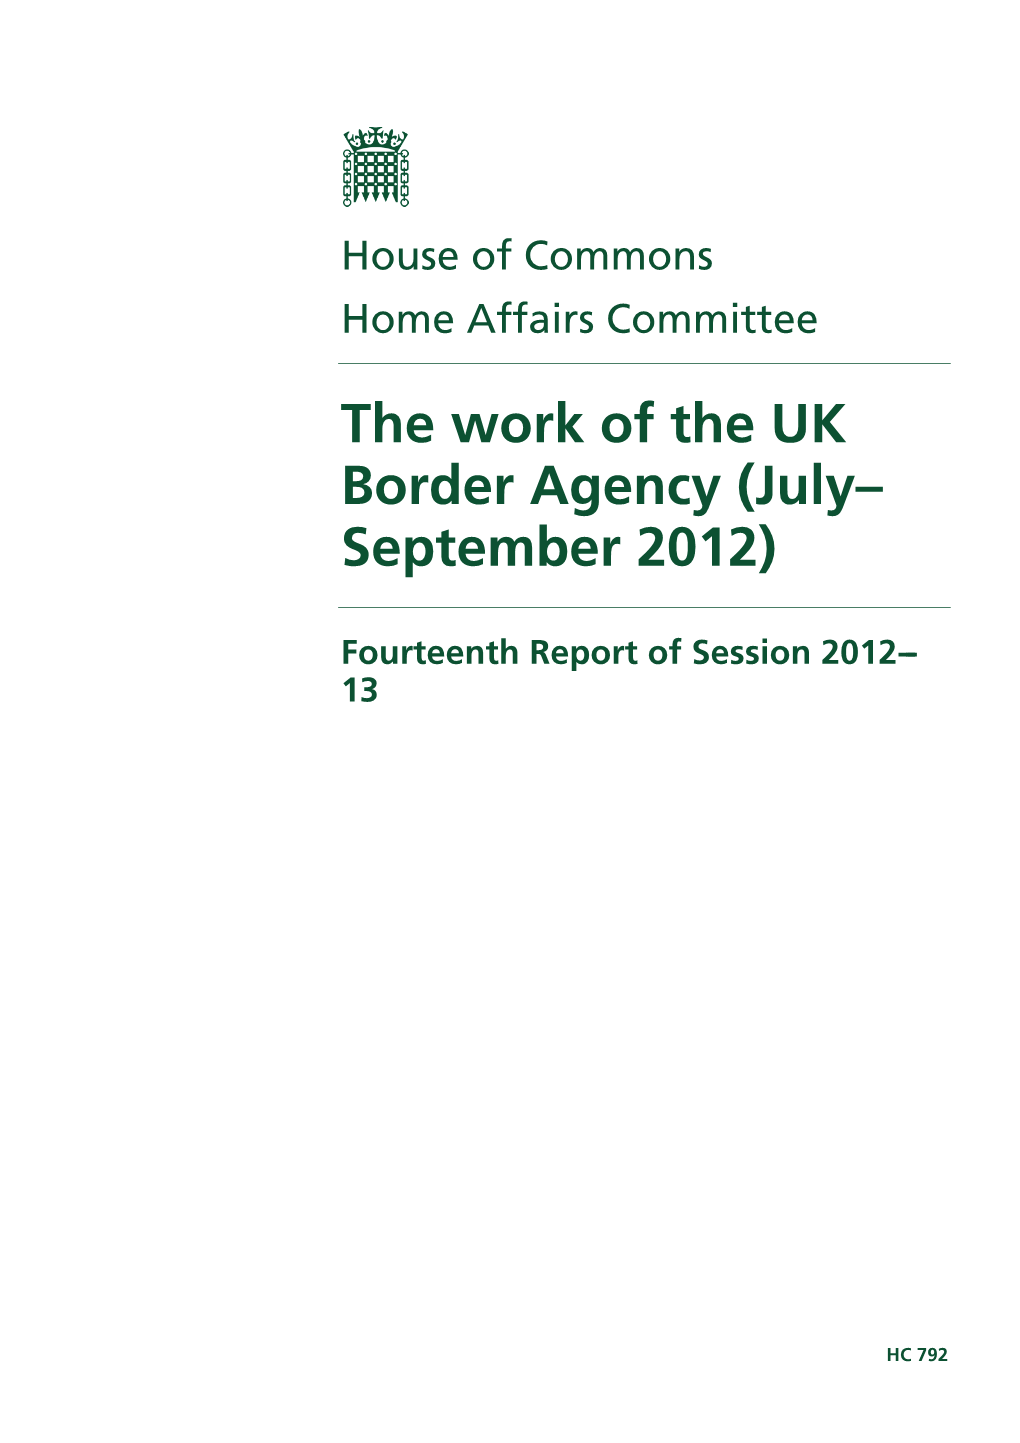 The Work of the UK Border Agency (July– September 2012)